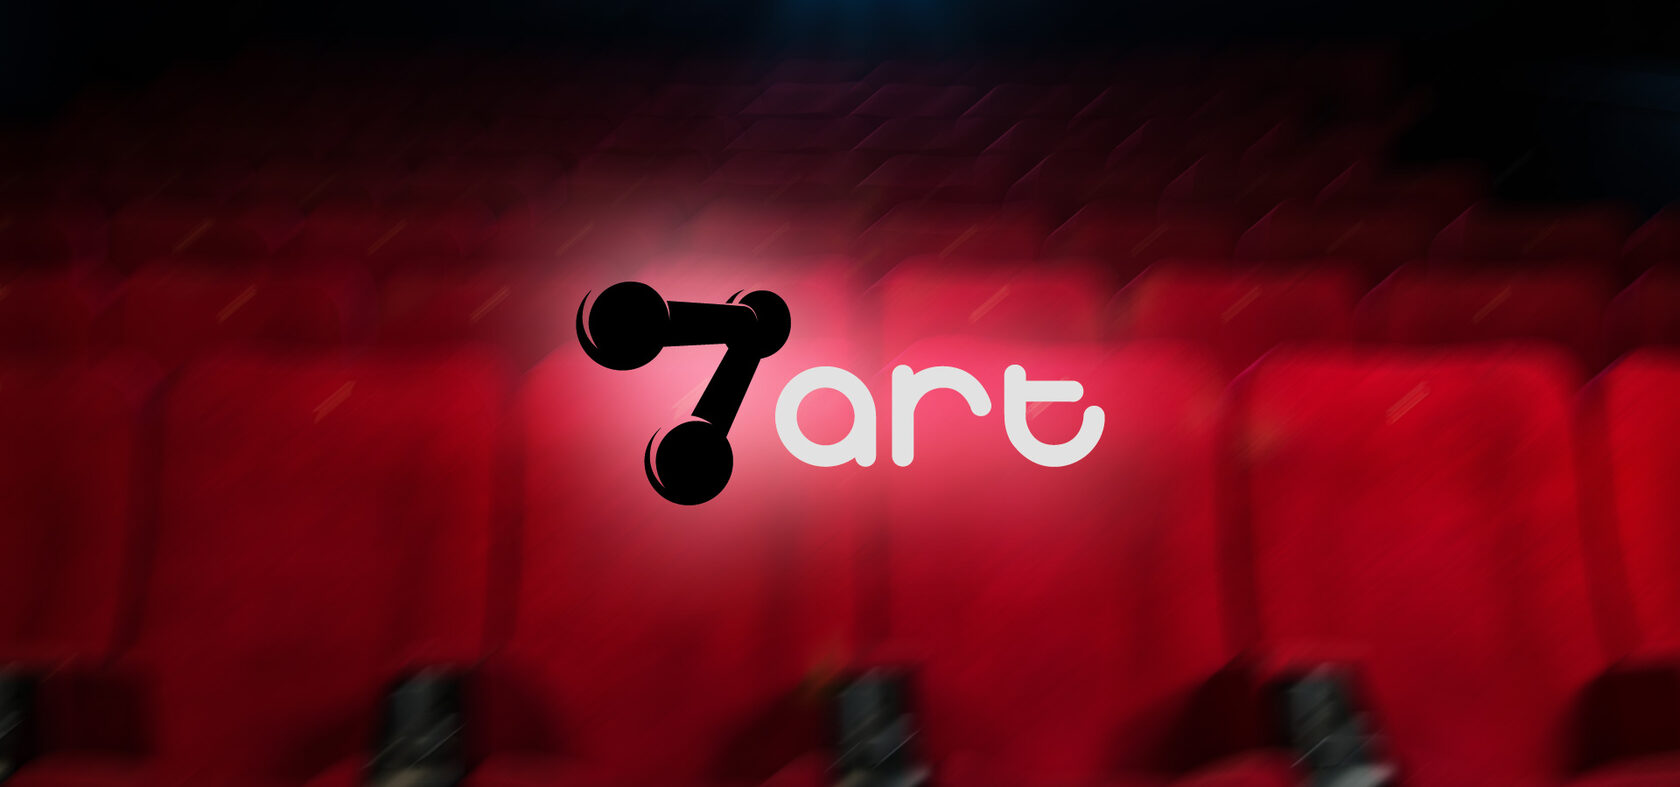 Представленная 2017. 7art ТНТ. 7 Арт представляет логотип. Атр7в. Камеди клаб продакшн.